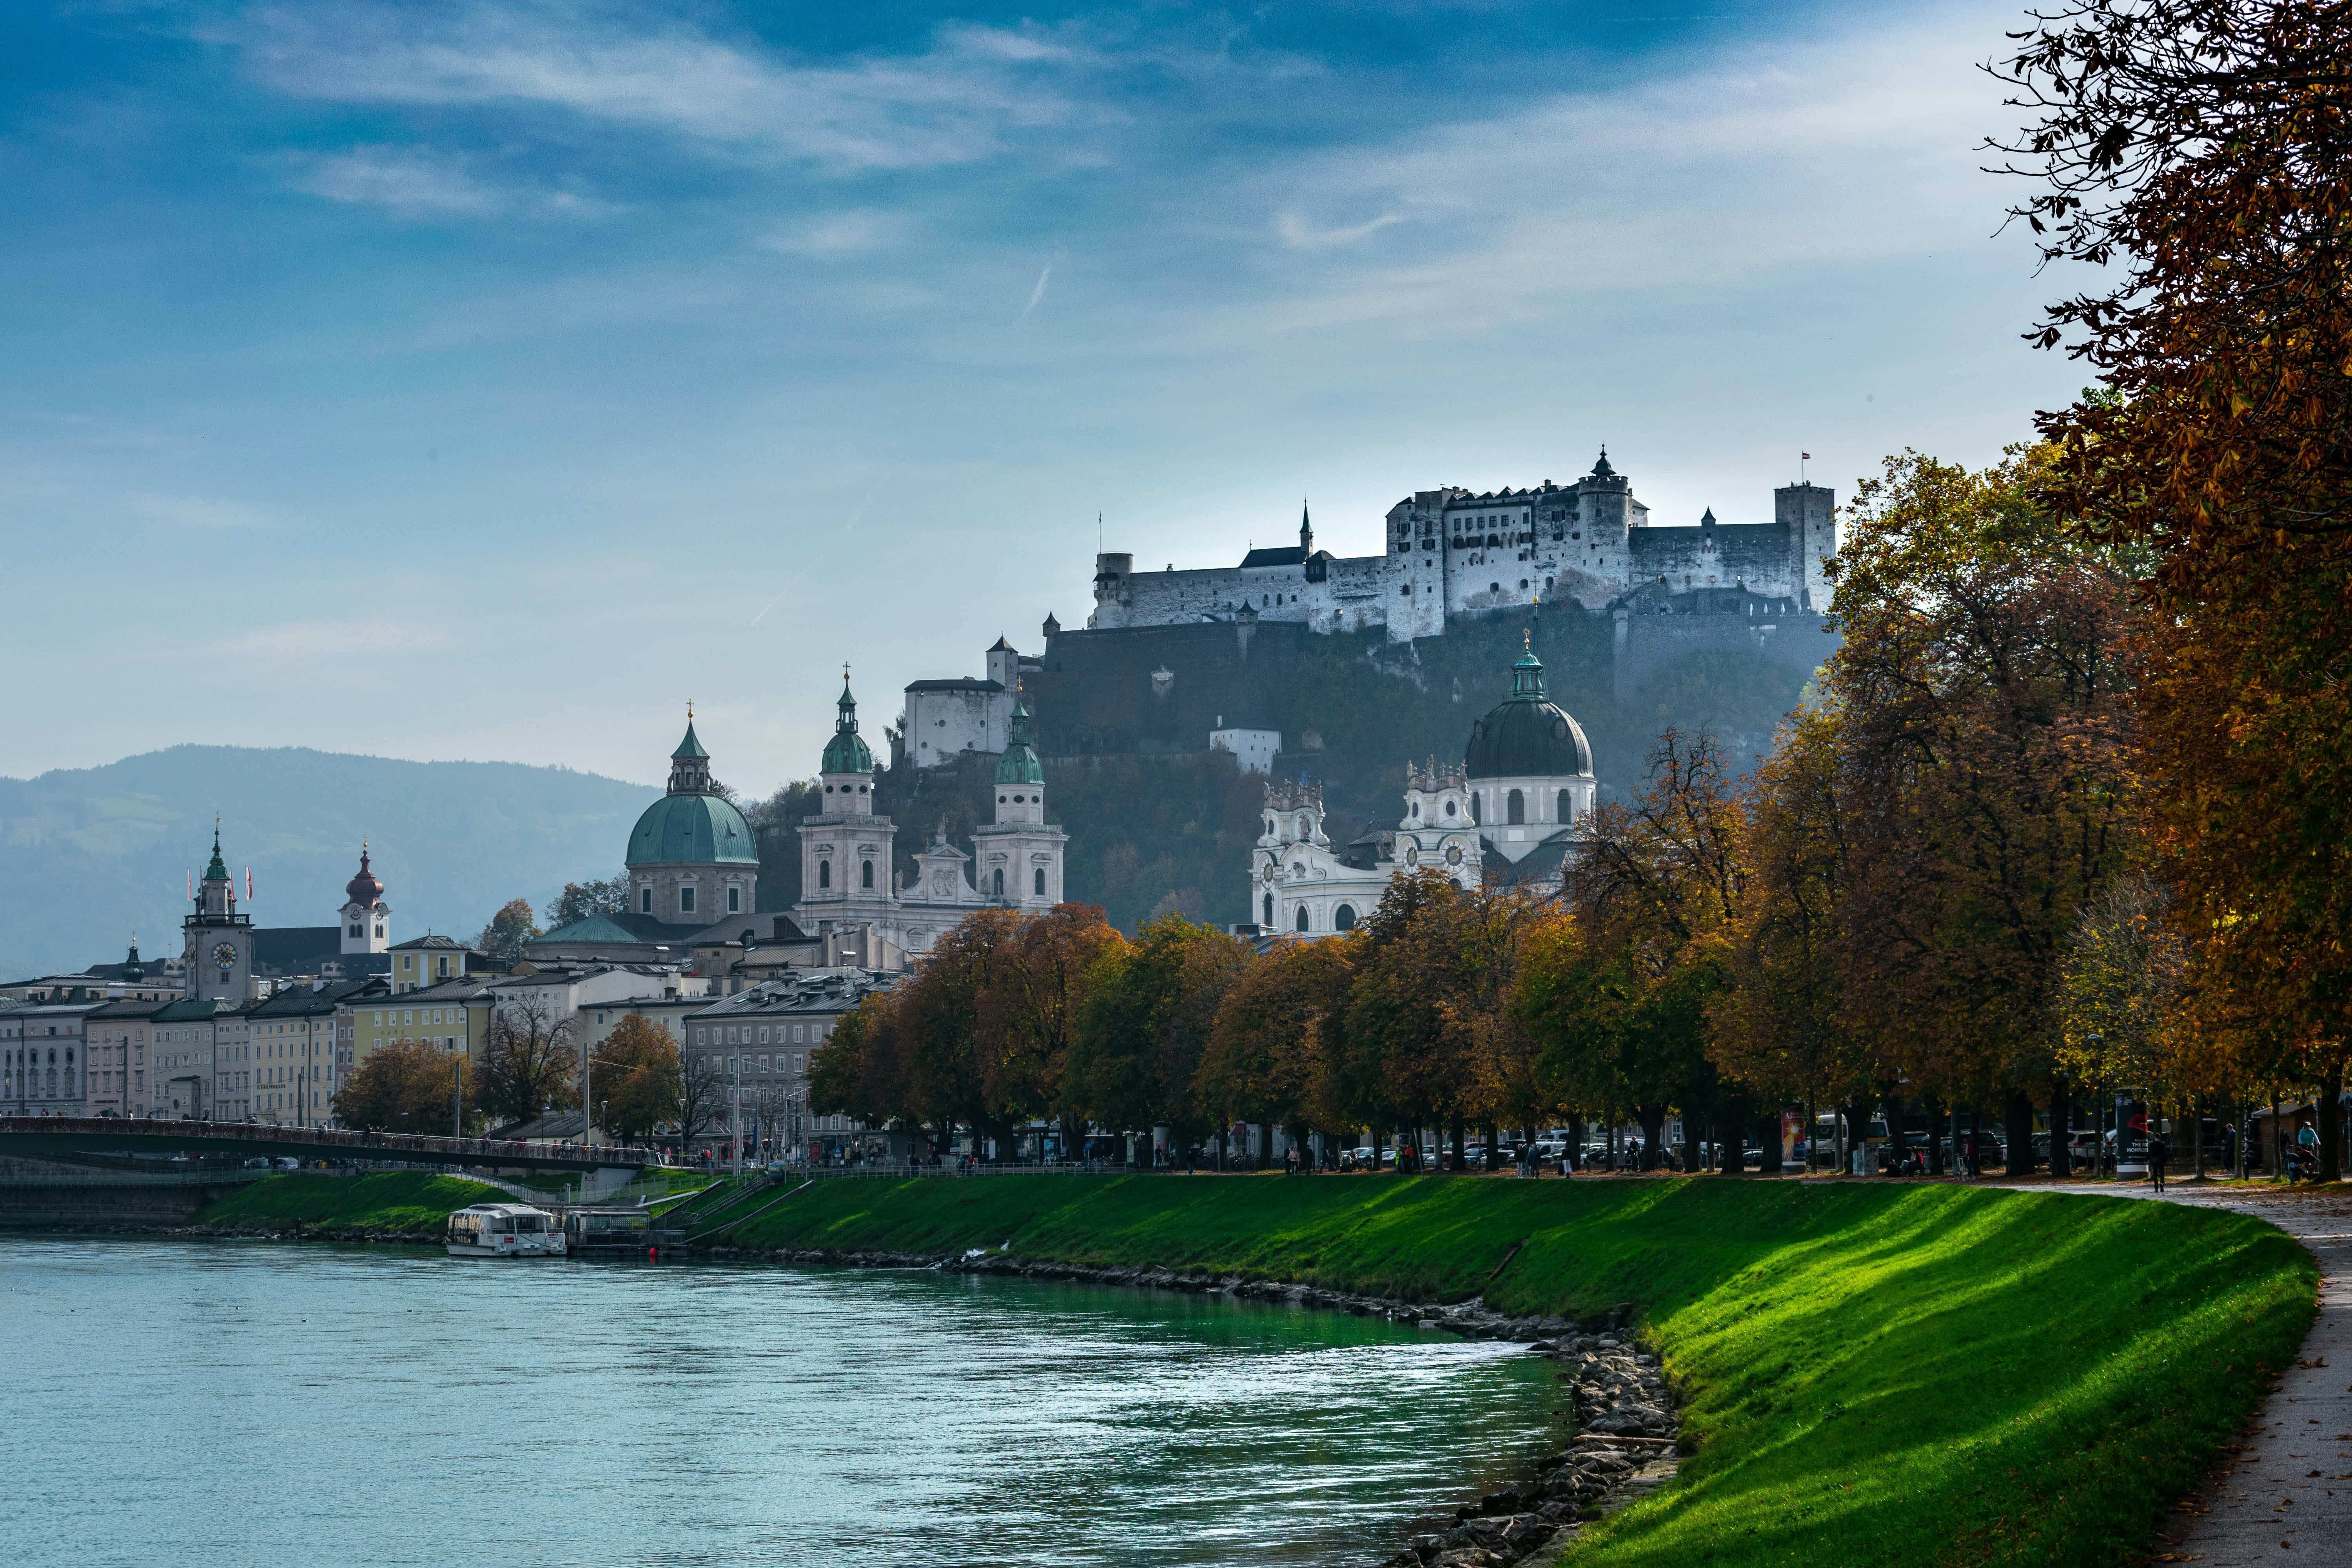 Erlebe die hohe Lebensqualität von Eben im Pongau, Salzburg. Entdecke die regionalen Vorzüge inmitten der malerischen Landschaft. #Salzburg #EbenimPongau